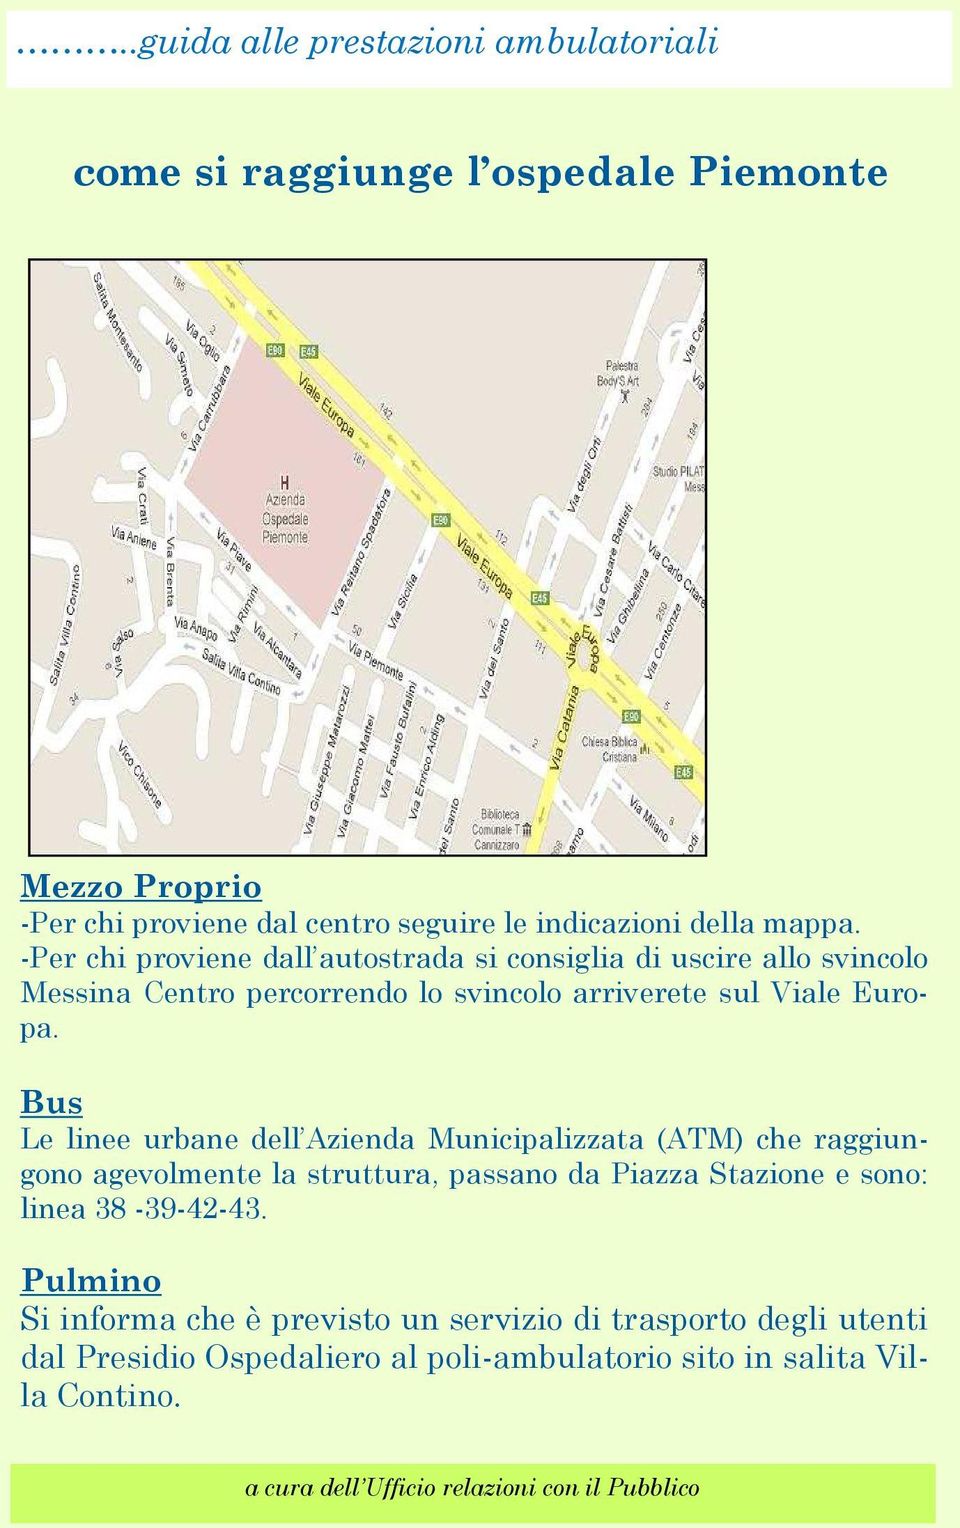 Bus Le linee urbane dell Azienda Municipalizzata (ATM) che raggiungono agevolmente la struttura, passano da Piazza Stazione e sono: linea